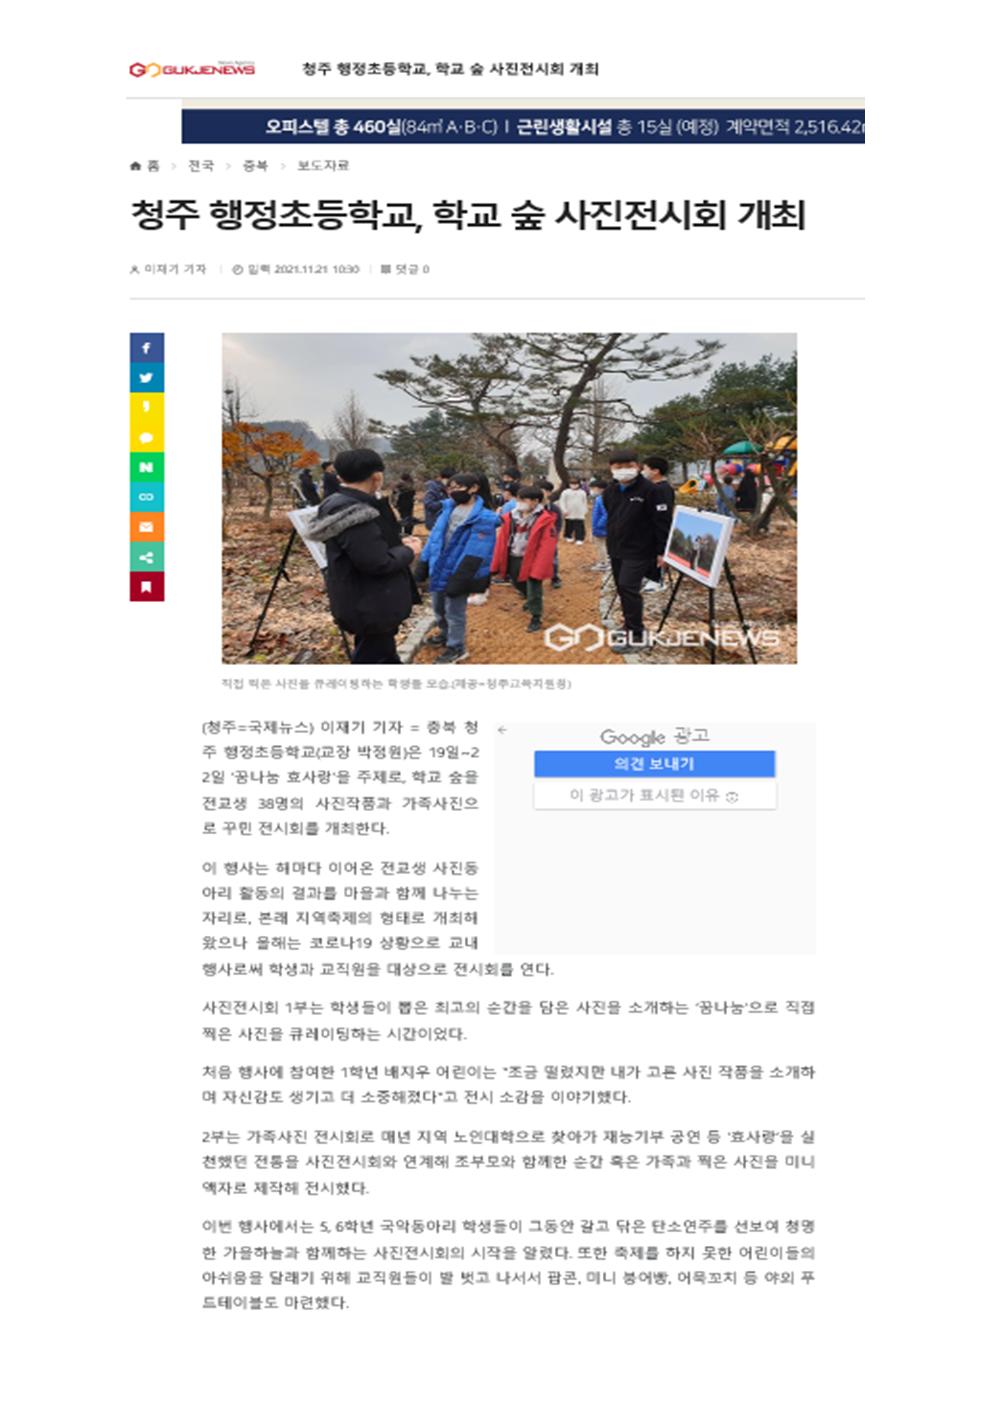 학교 숲 사진전시회 개최 보도자료(11.22.)001